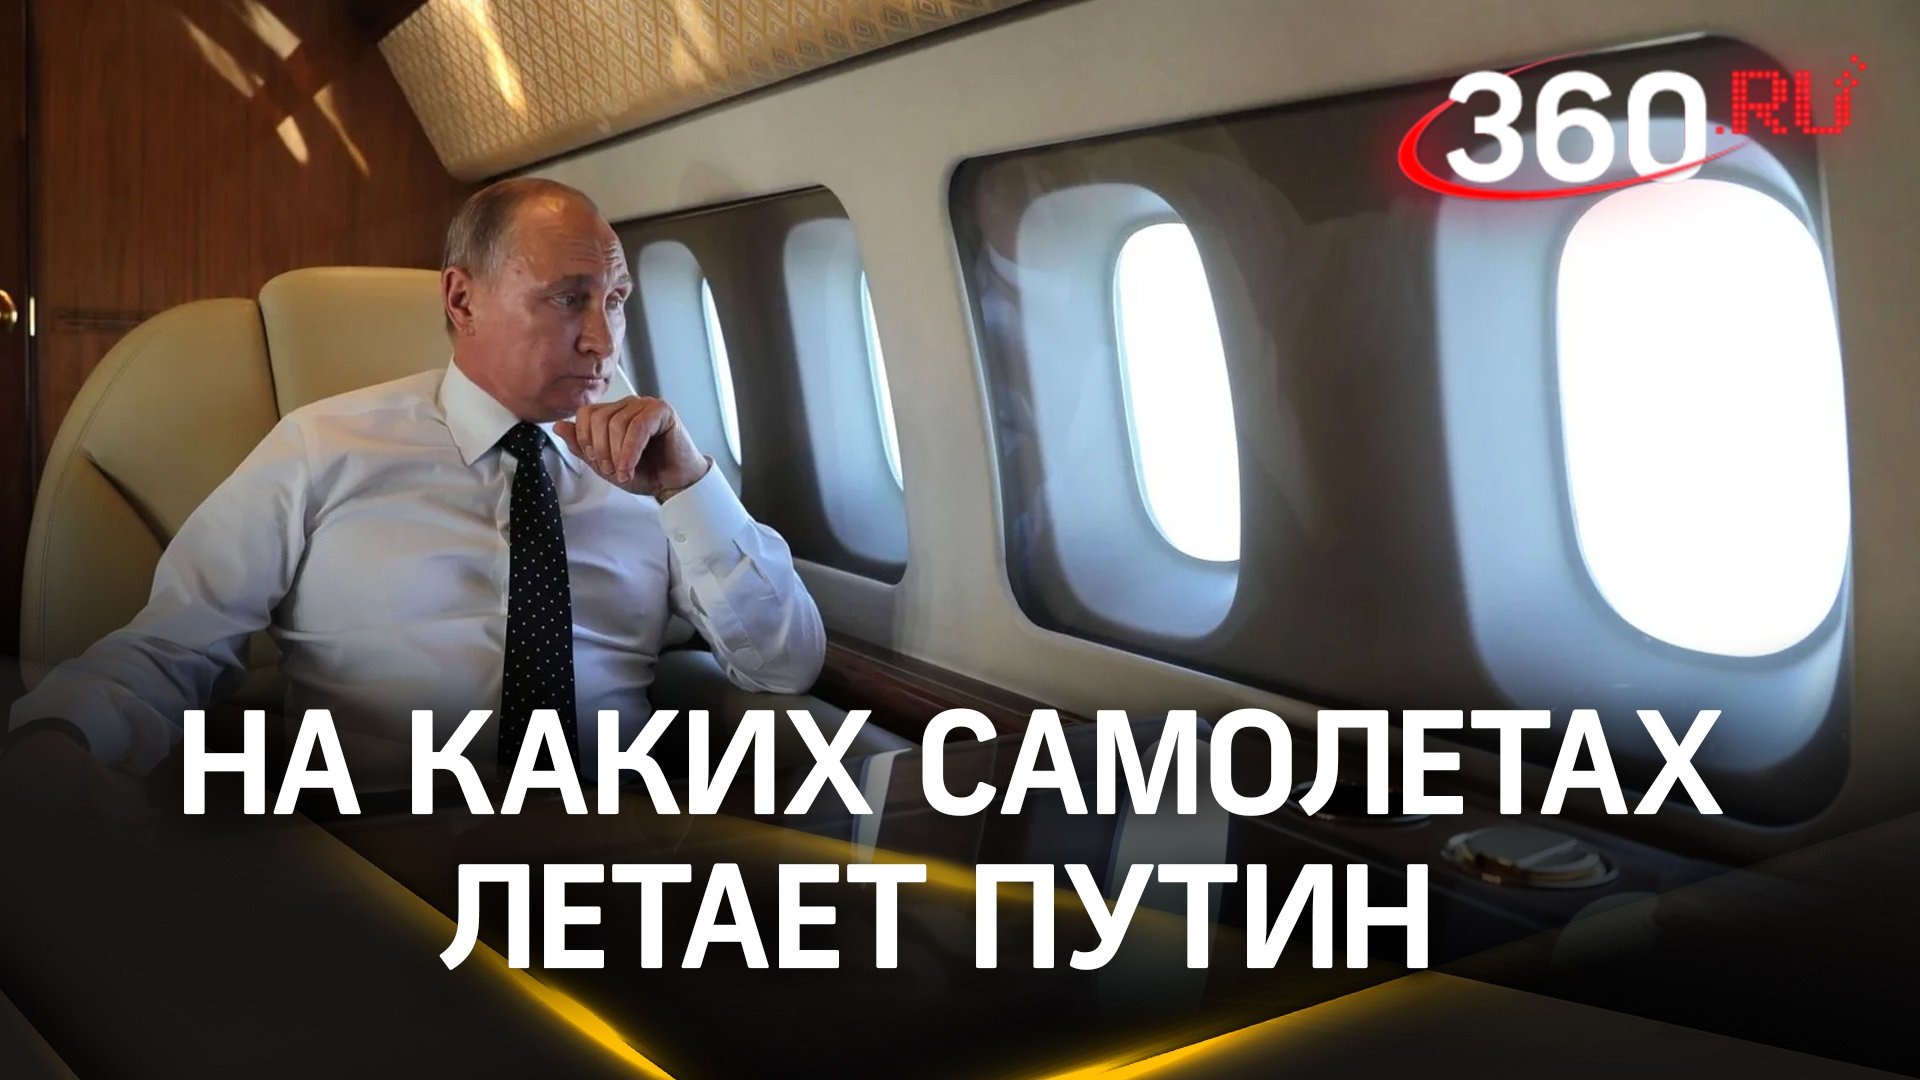 Безопасны ли самолеты, на которых летает Путин?